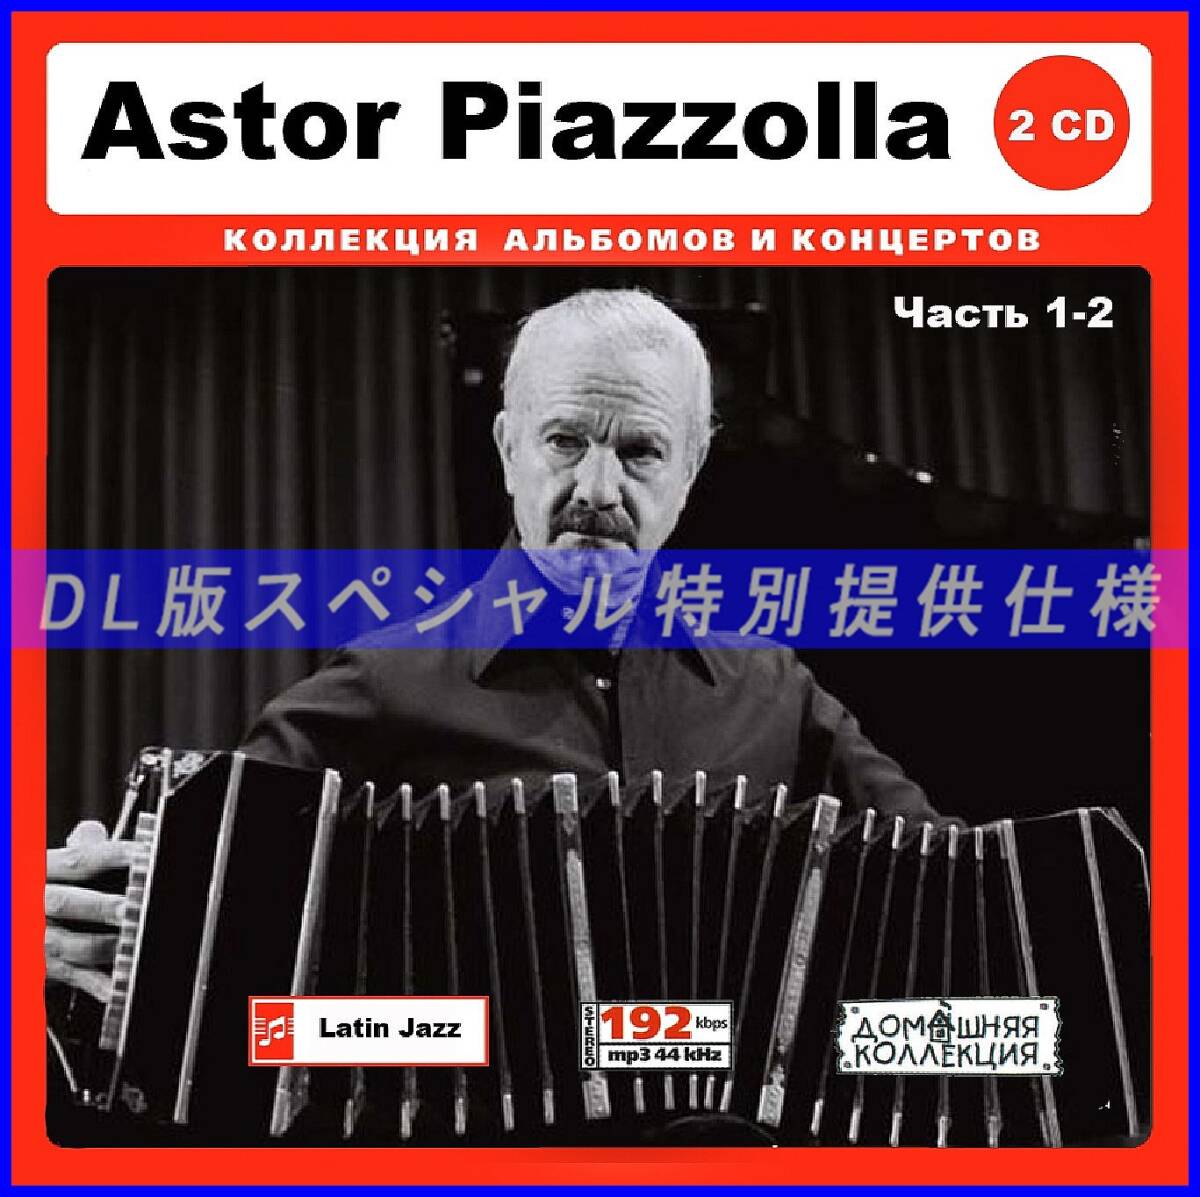 【特別仕様】Astor Piazzolla アストル・ピアソラ 238song DL版MP3CD 2CD♪の画像1